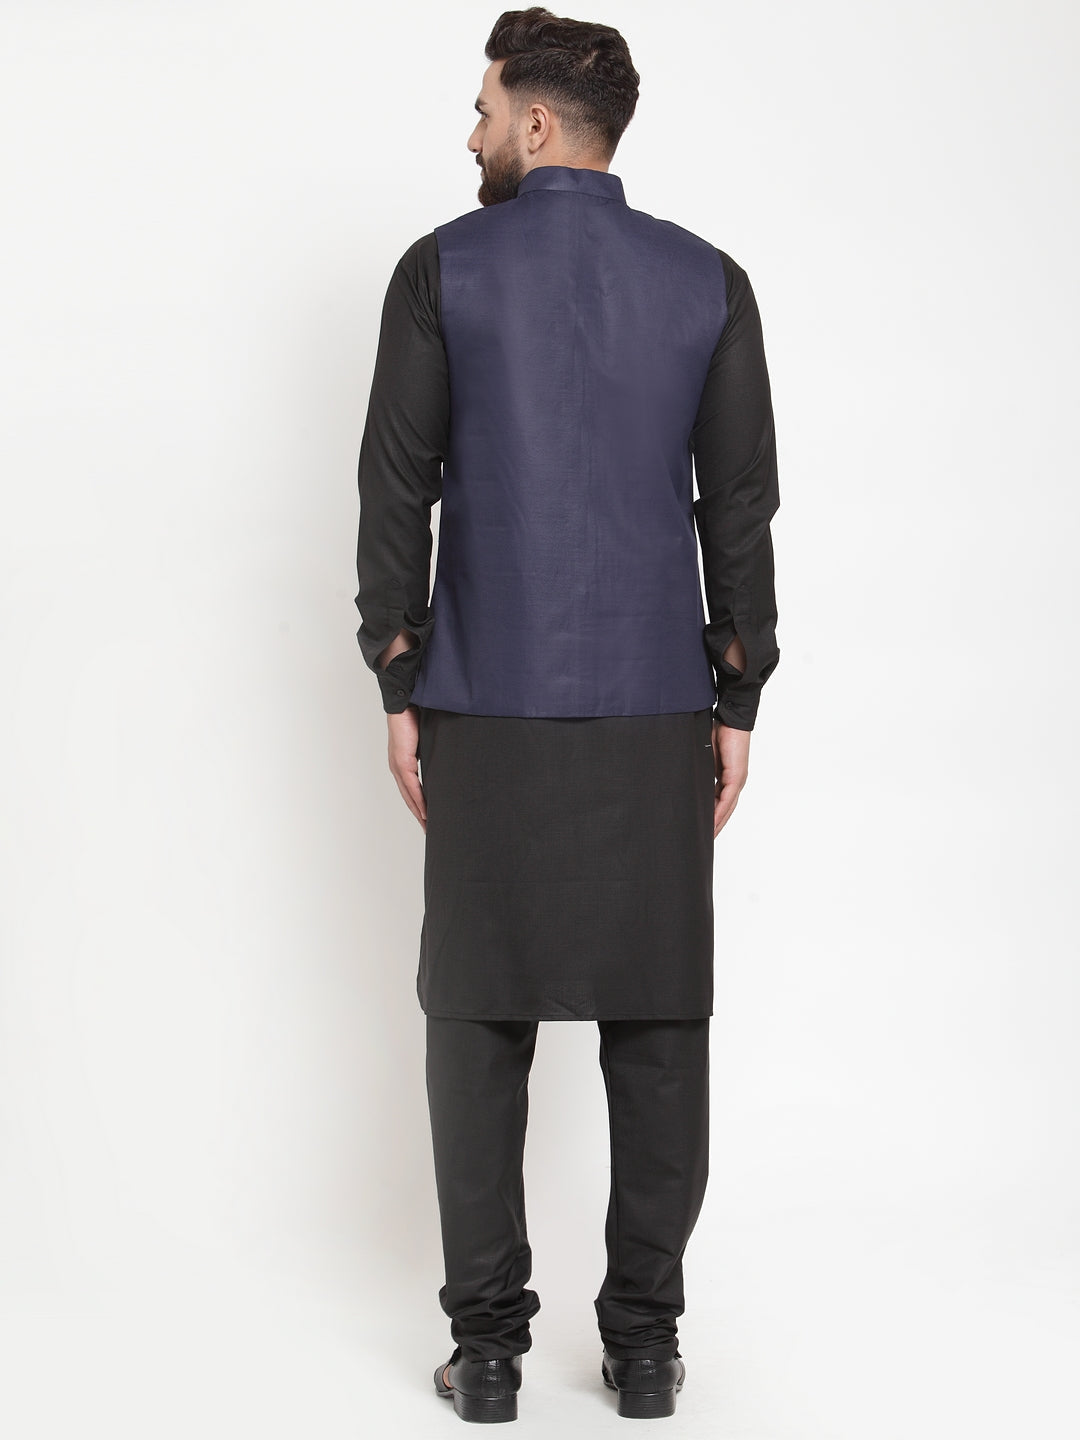 Jompers Men's Solid Kurta Pajama with Solid Waistcoat (Navy) - Distacart